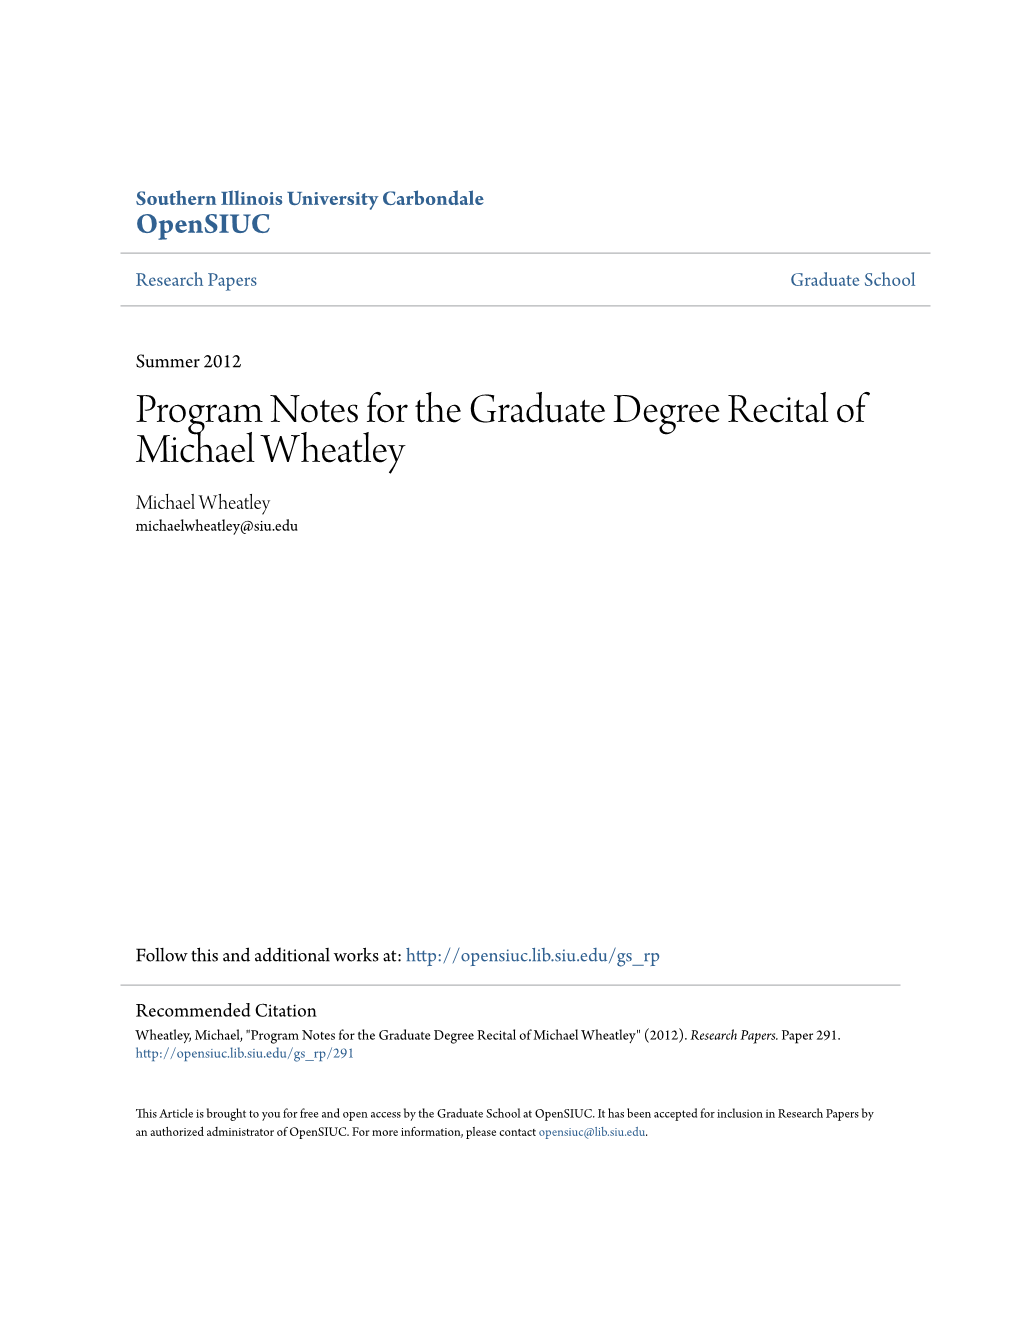 Program Notes for the Graduate Degree Recital of Michael Wheatley Michael Wheatley Michaelwheatley@Siu.Edu